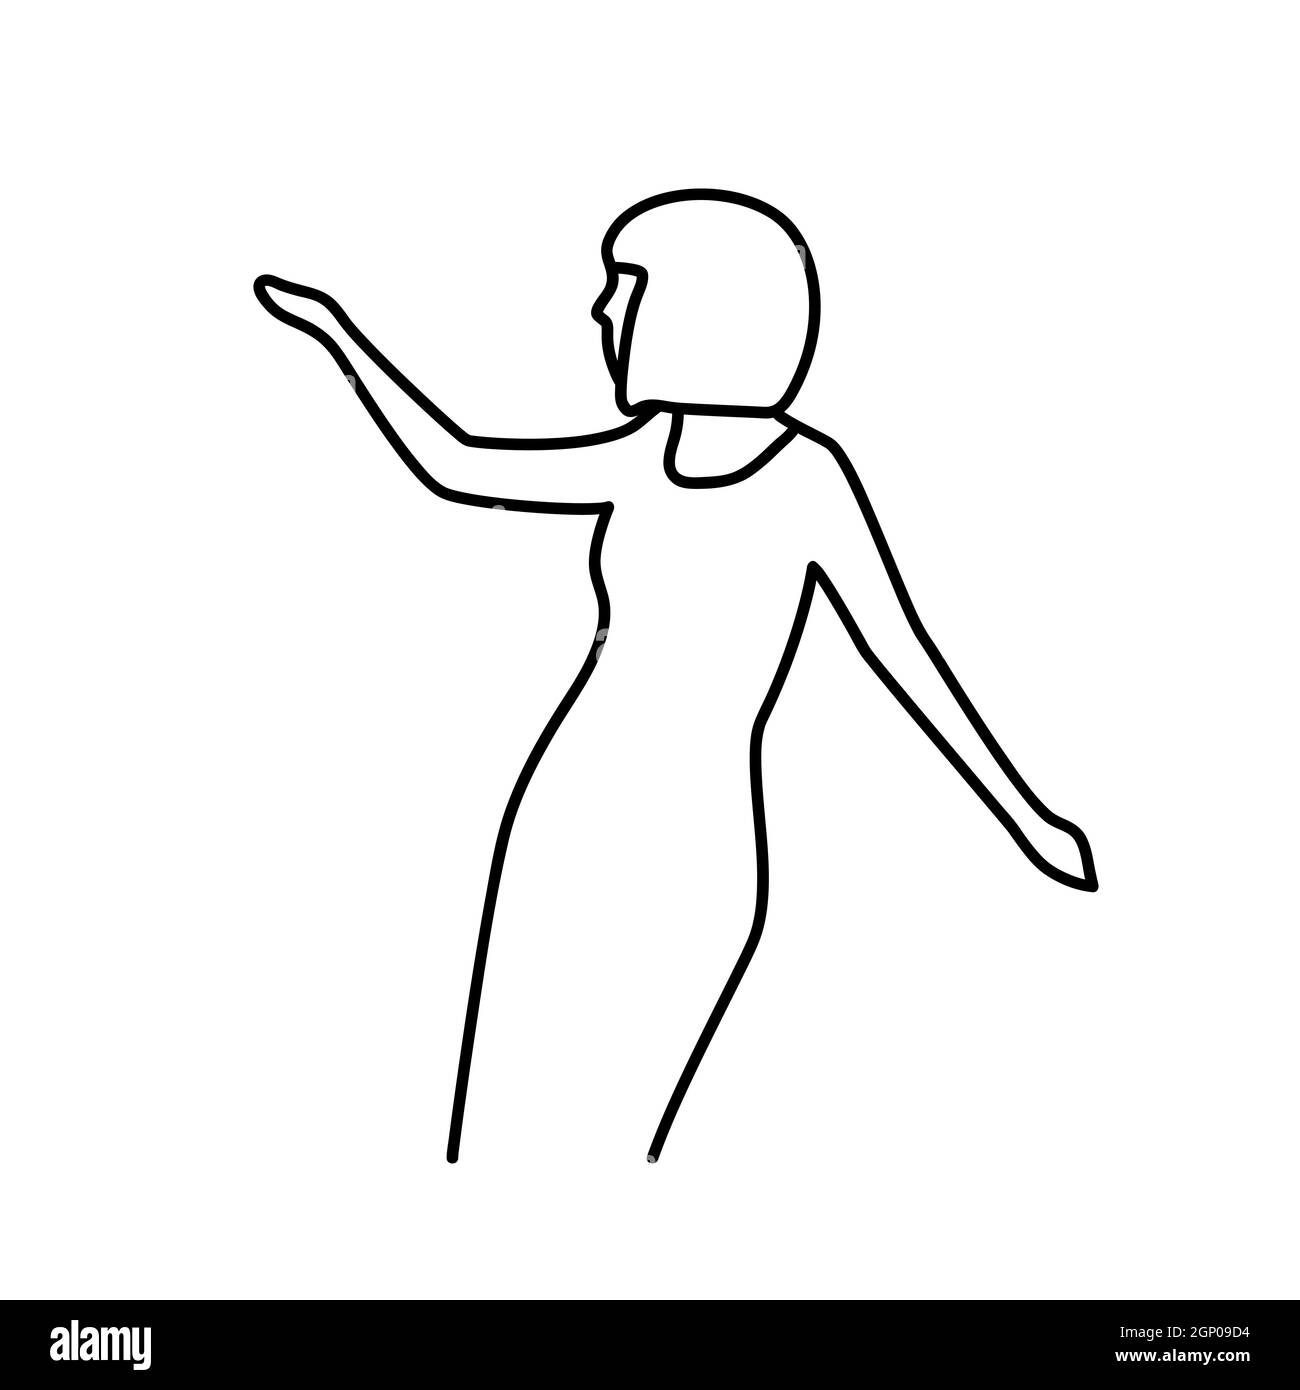 Minimalismo ritratto vettoriale femminile disegnato a mano in moderno astratto stile grafico a una linea. Decorazione stampa, Wall art, design creativo per social media.Trendy modello ritratto whit ballare donna Illustrazione Vettoriale